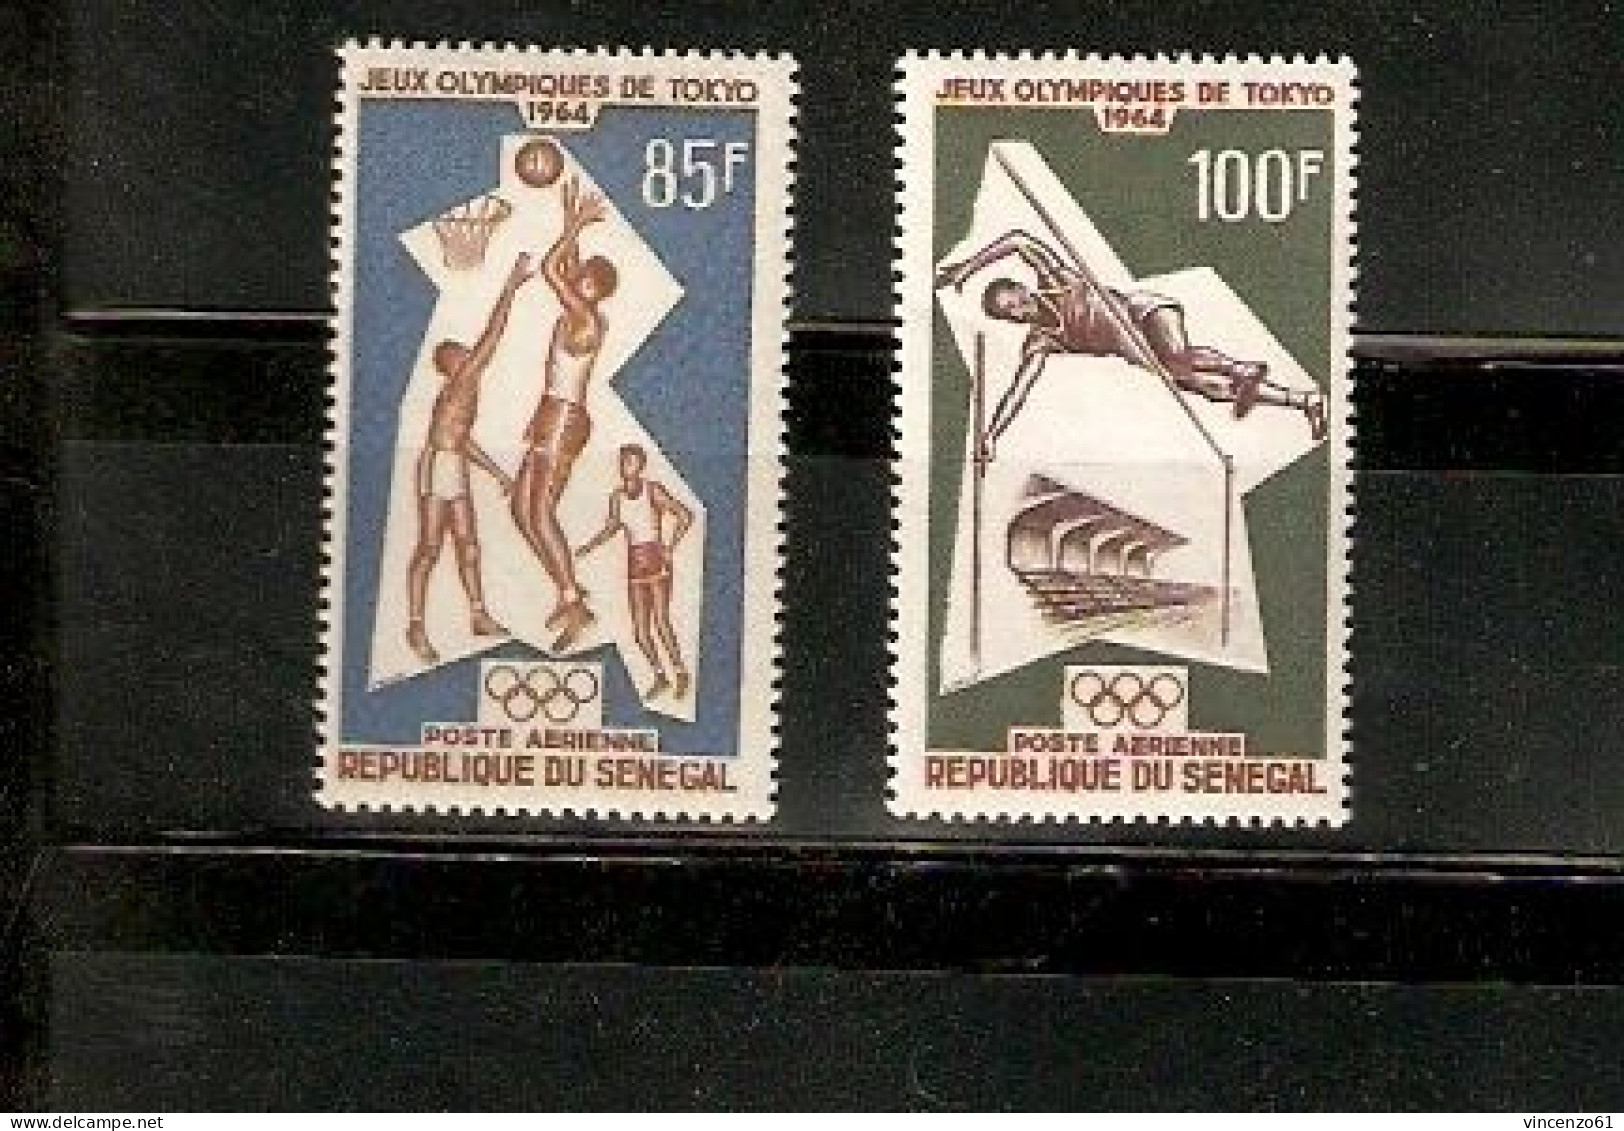 TOKYO OLIMPIC GAMES 1964 REPULIQUE DU SENEGAL - Verano 1964: Tokio